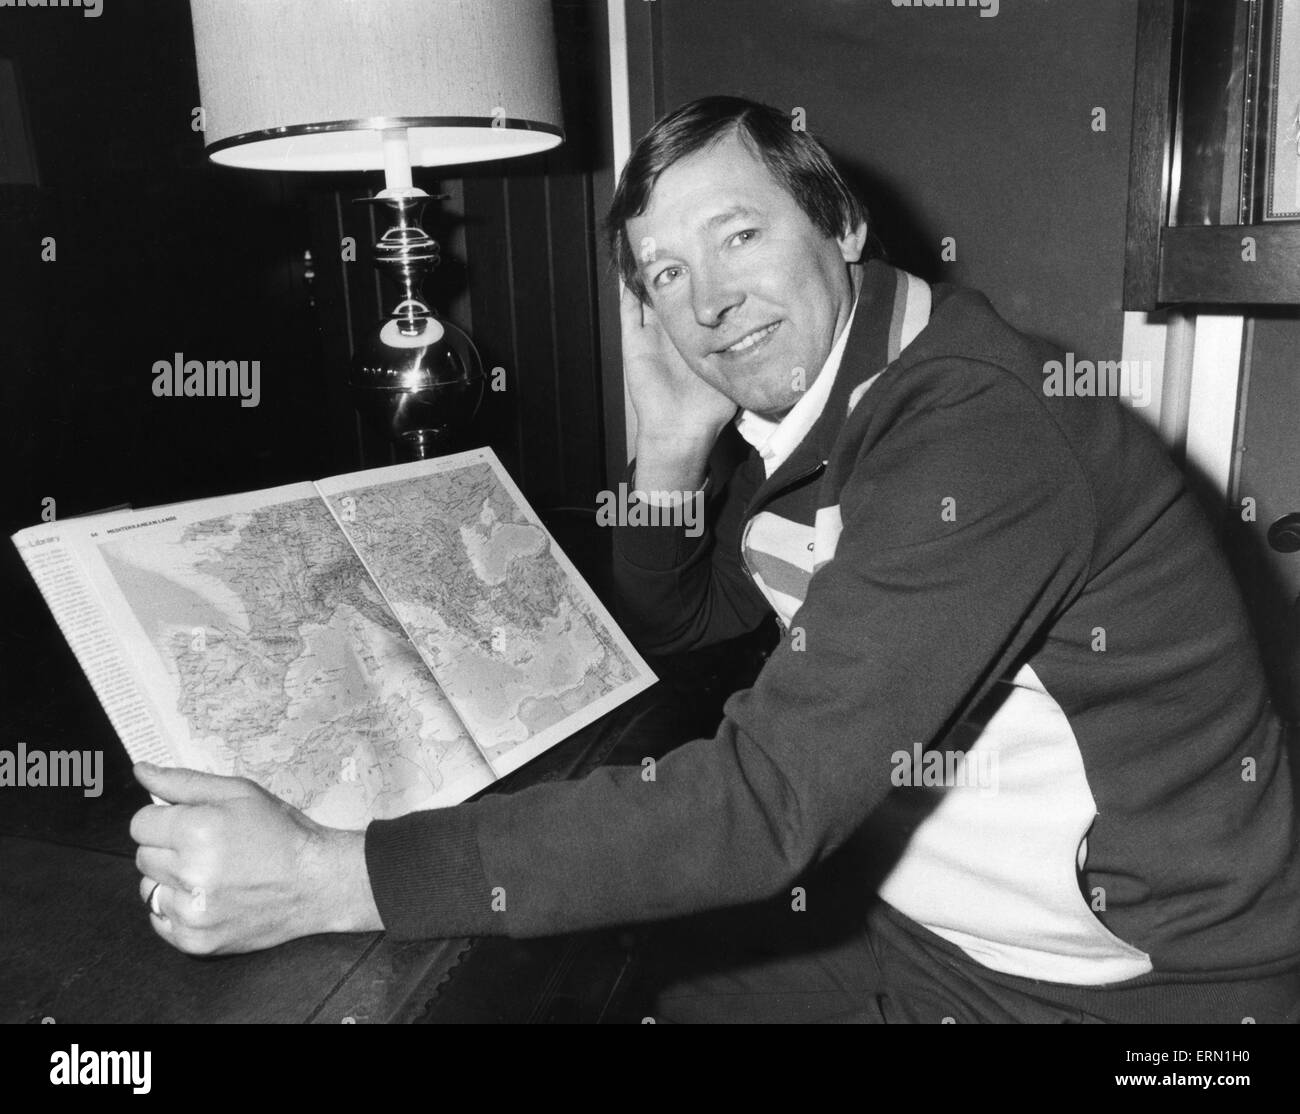 Aberdeen manager Alex Ferguson regarde une carte de l'Europe puisqu'il s'apprête à prend son côté dans la coupe d'Europe des Vainqueurs de Coupe 1/4 de finale pour la première fois. 27 novembre 1982. Banque D'Images